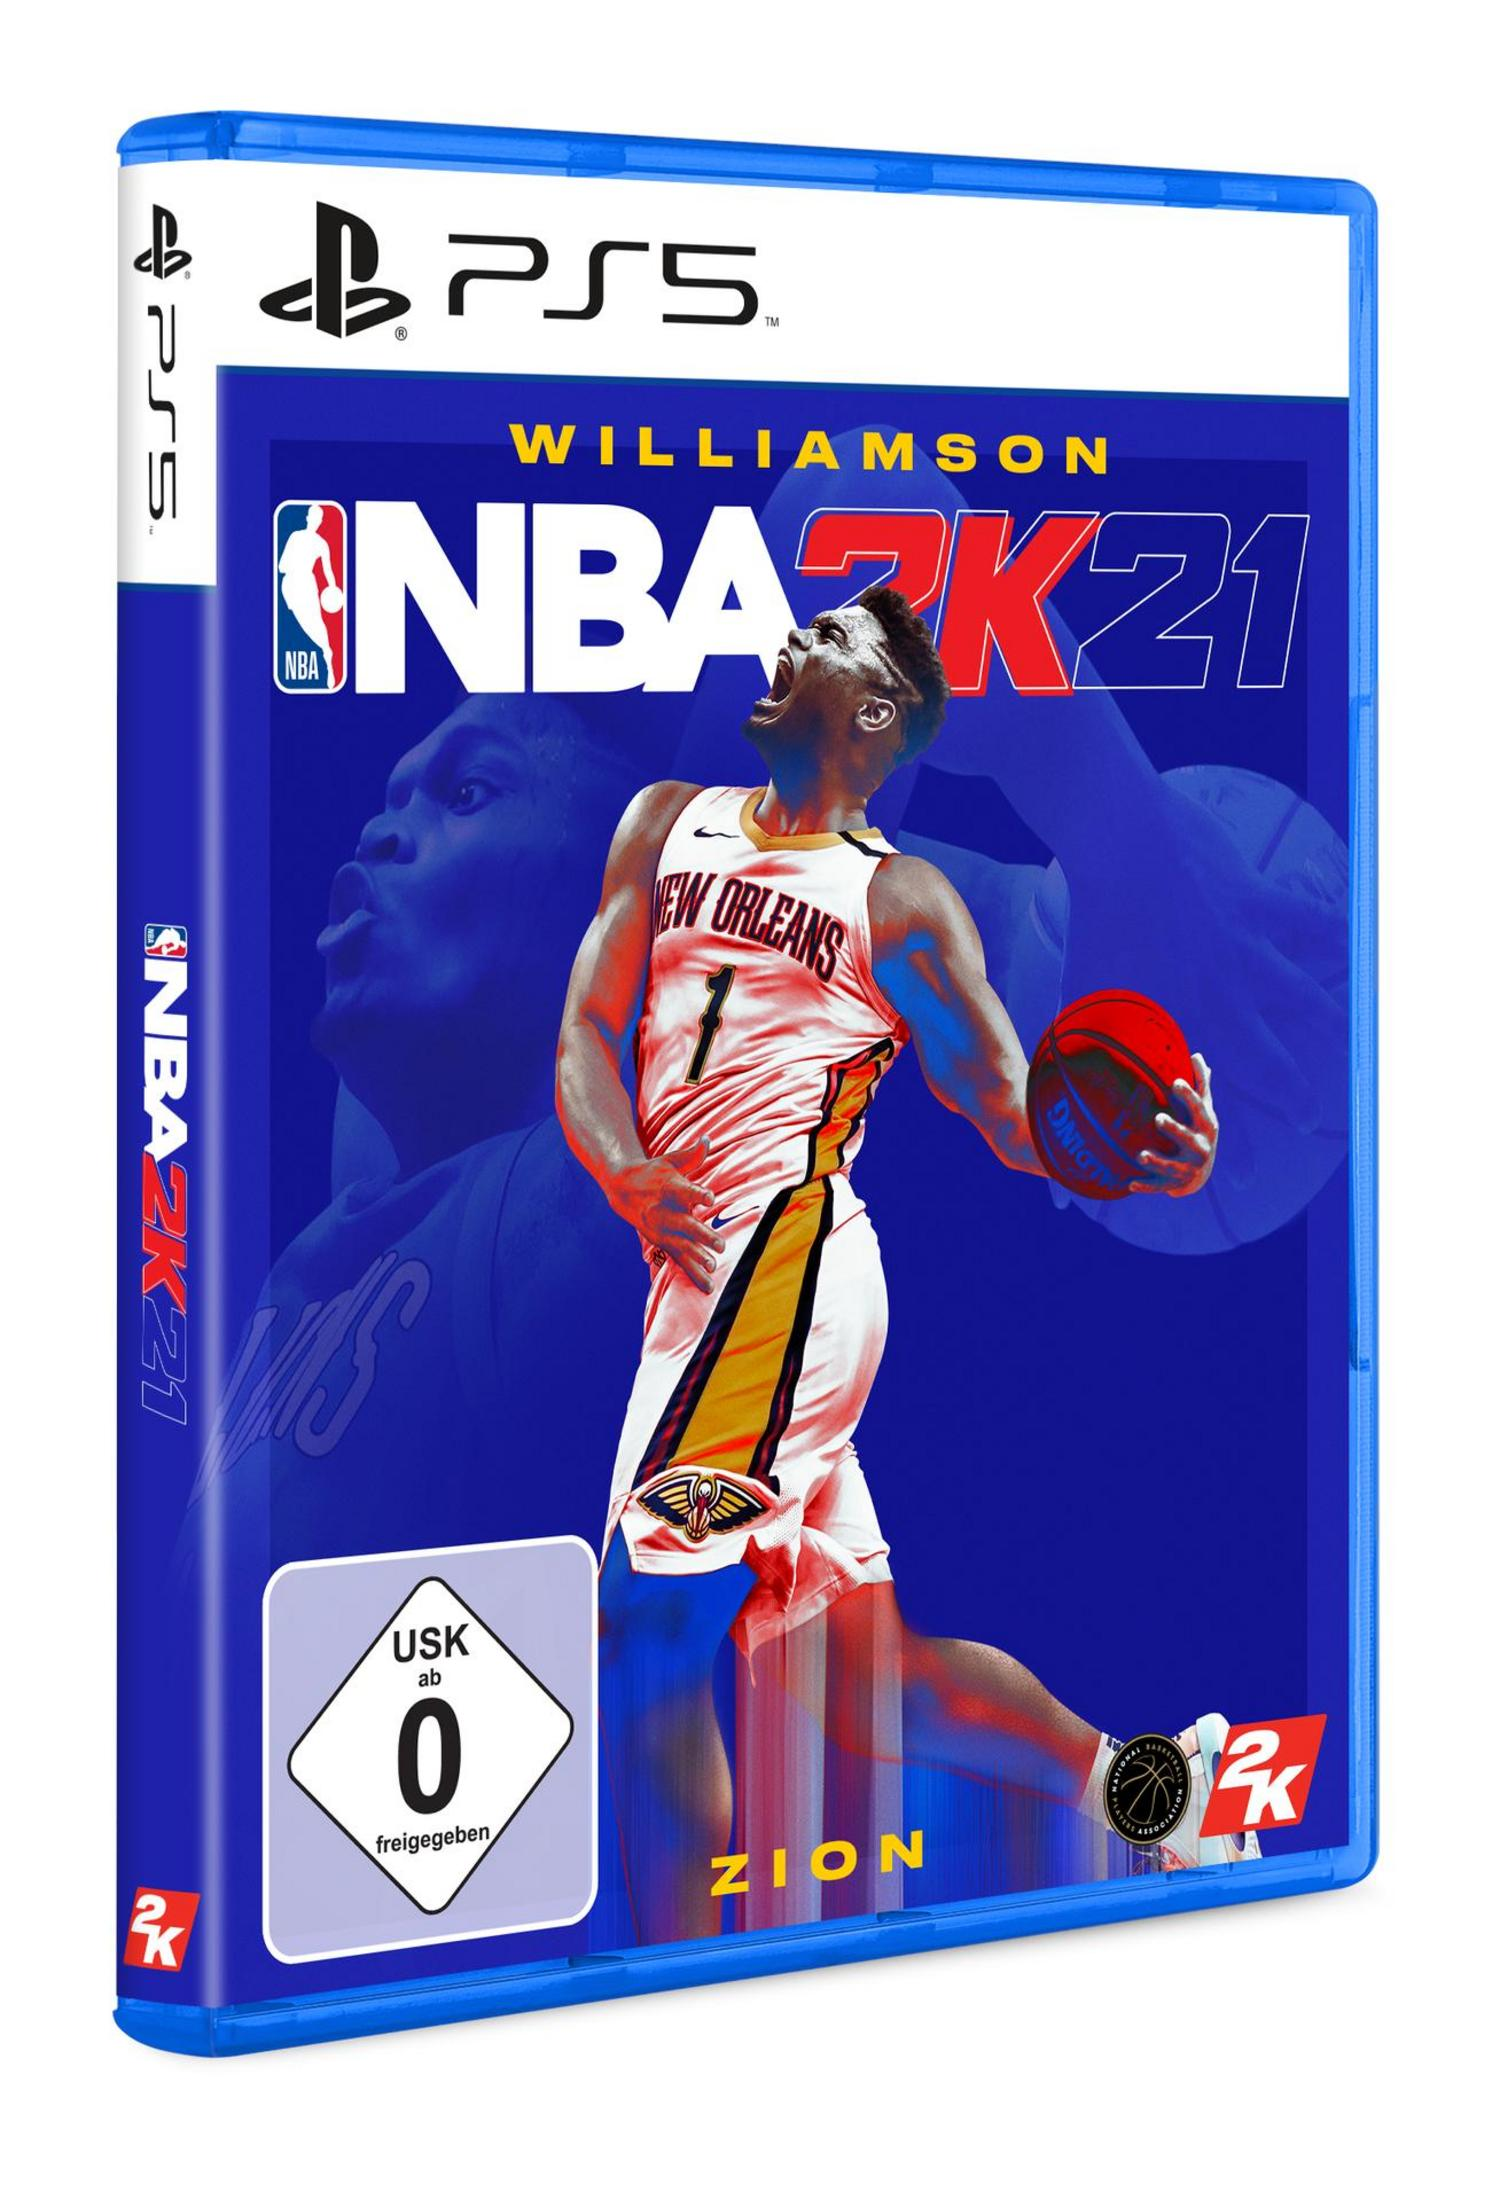 [PlayStation - 5] 2K21 NBA